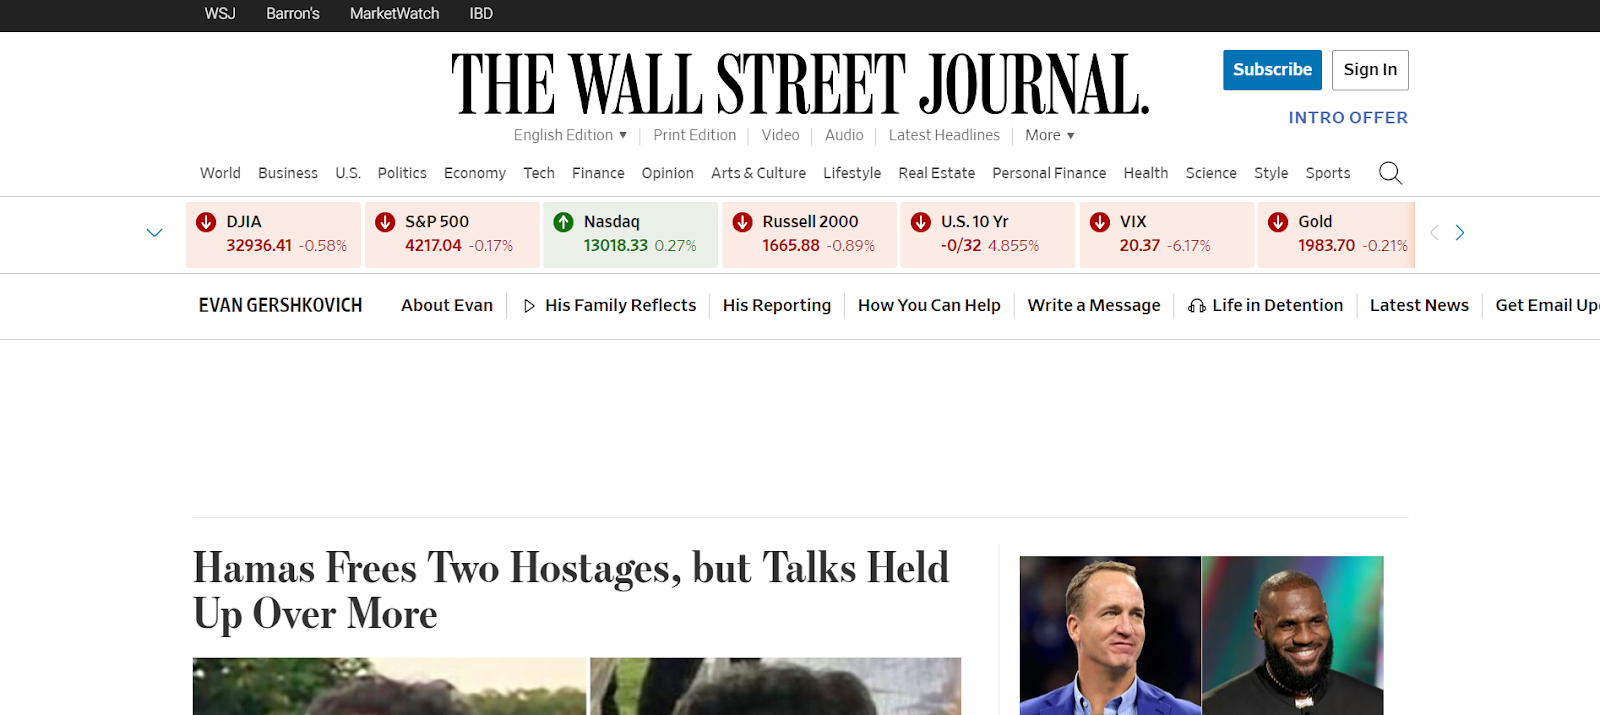 9. A Wall Street Journal